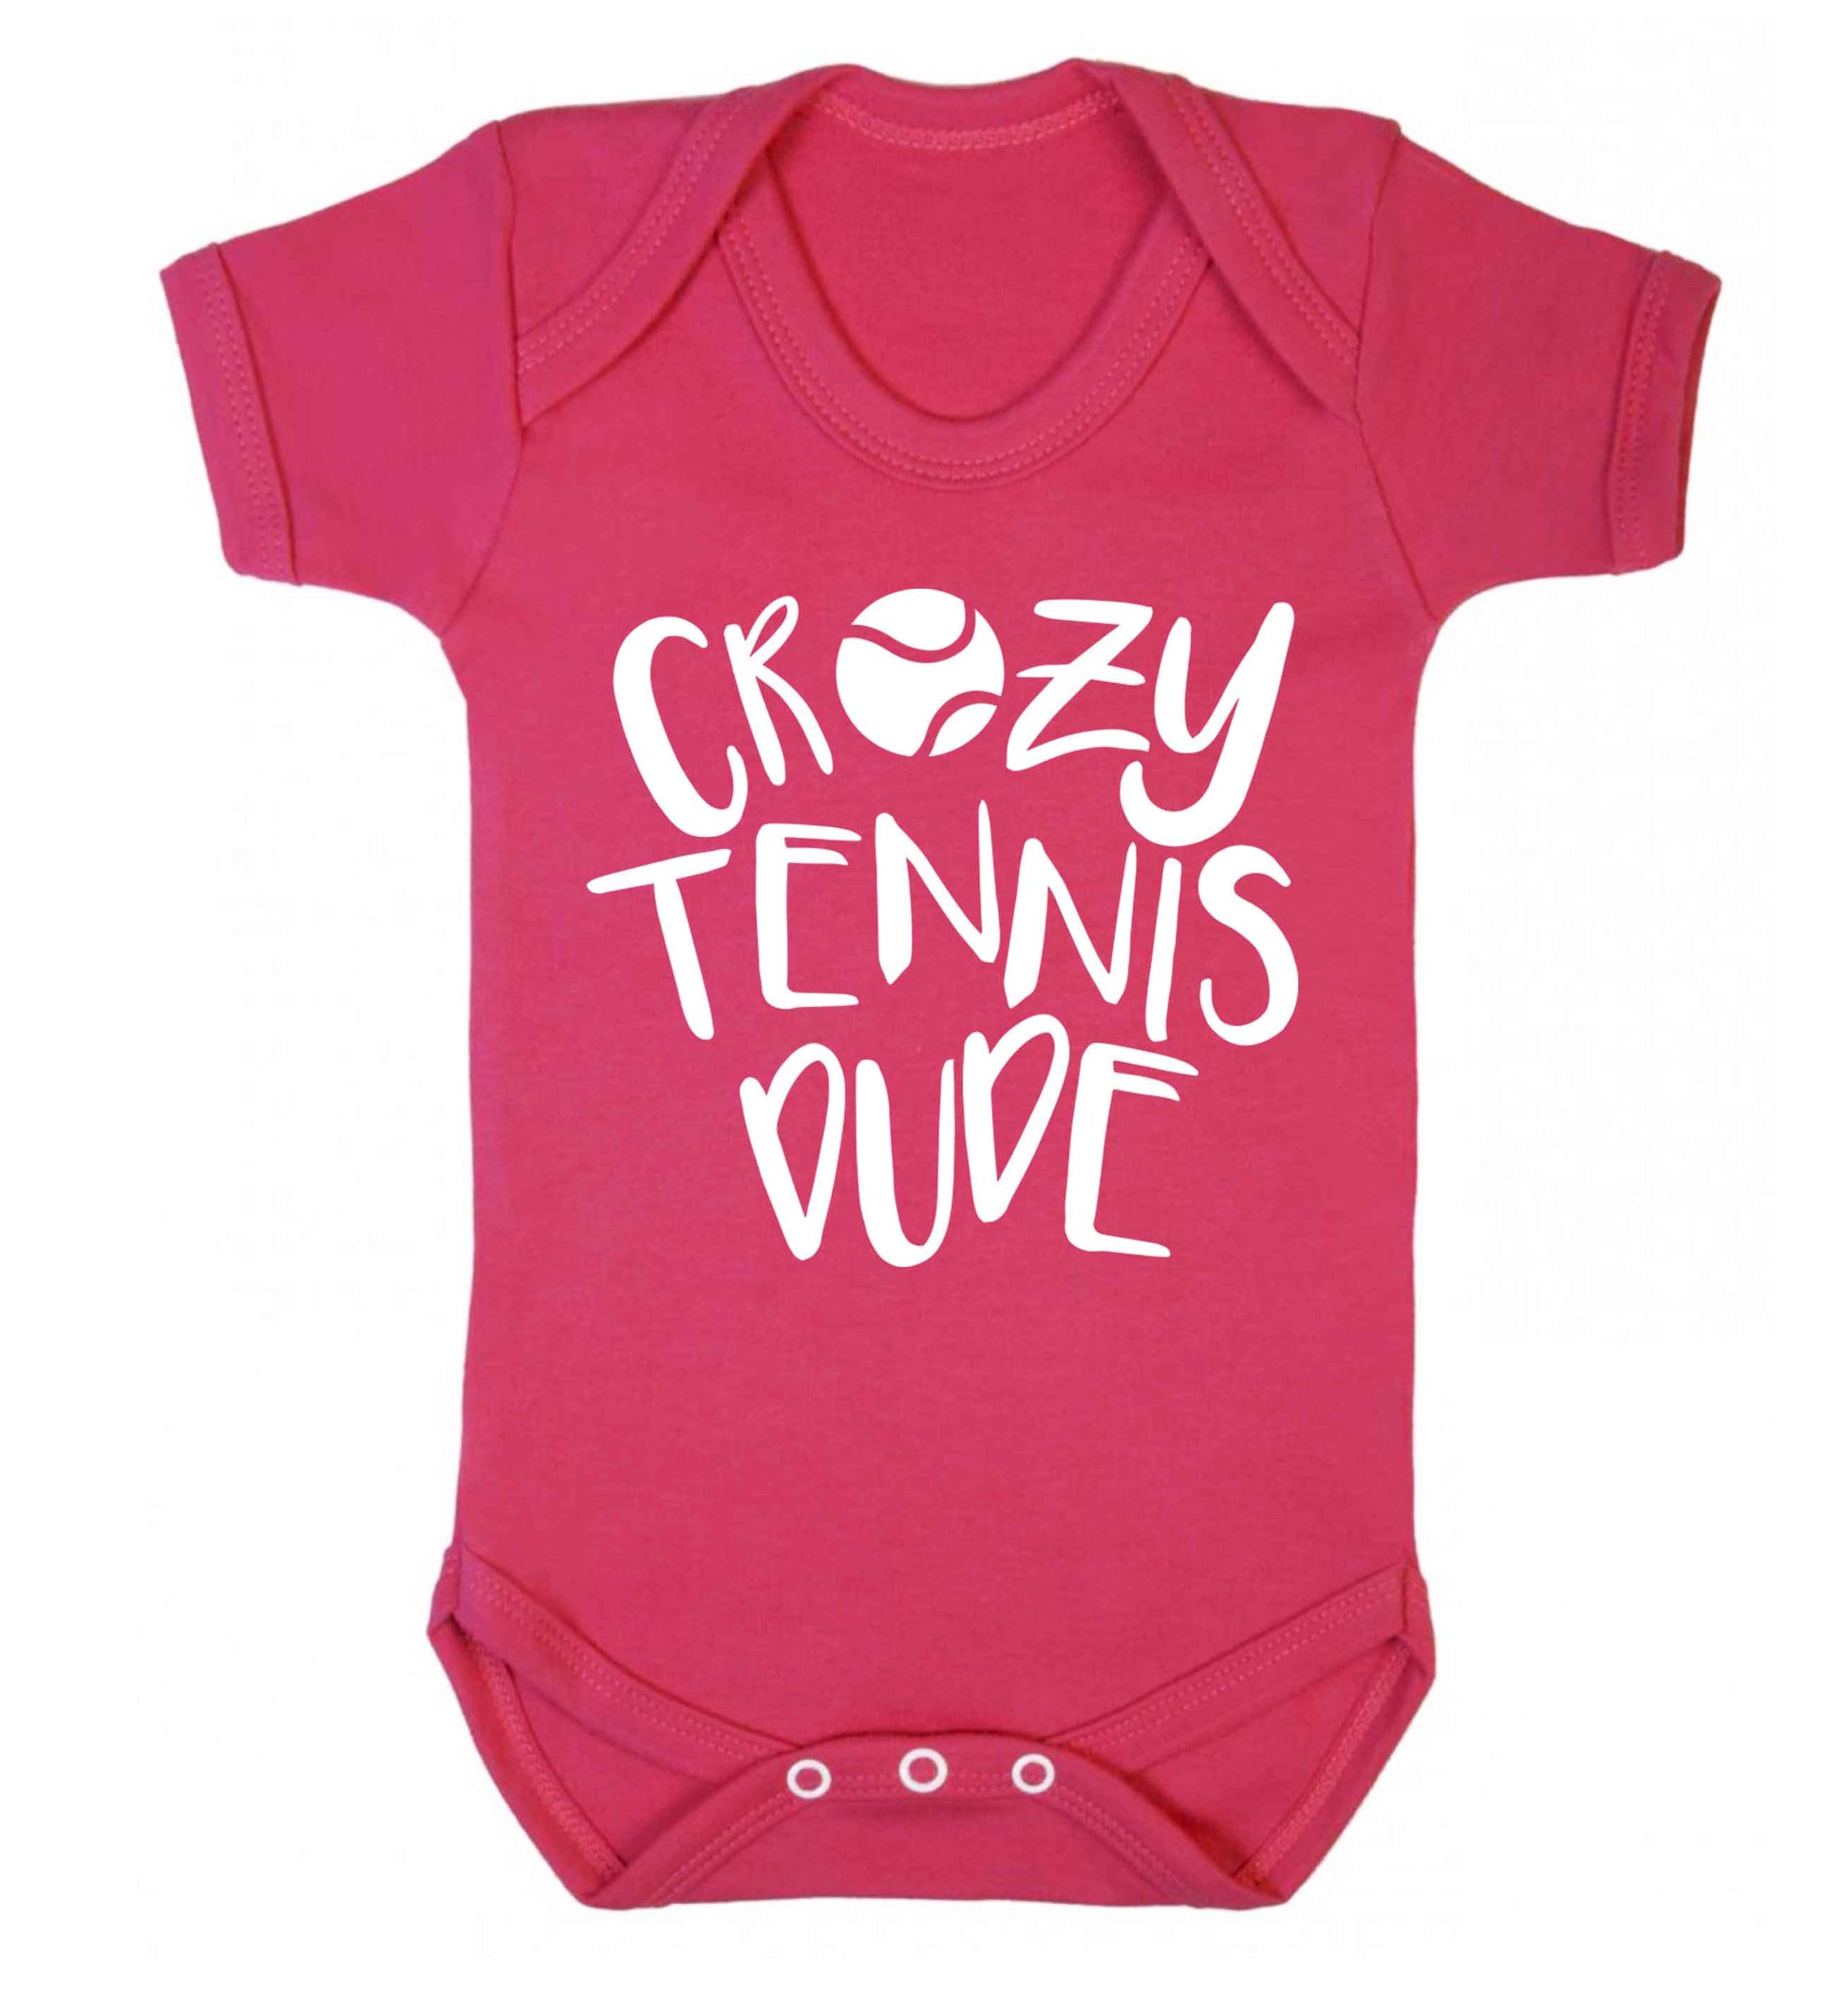 Crazy tennis dude Baby Vest dark pink 18-24 months